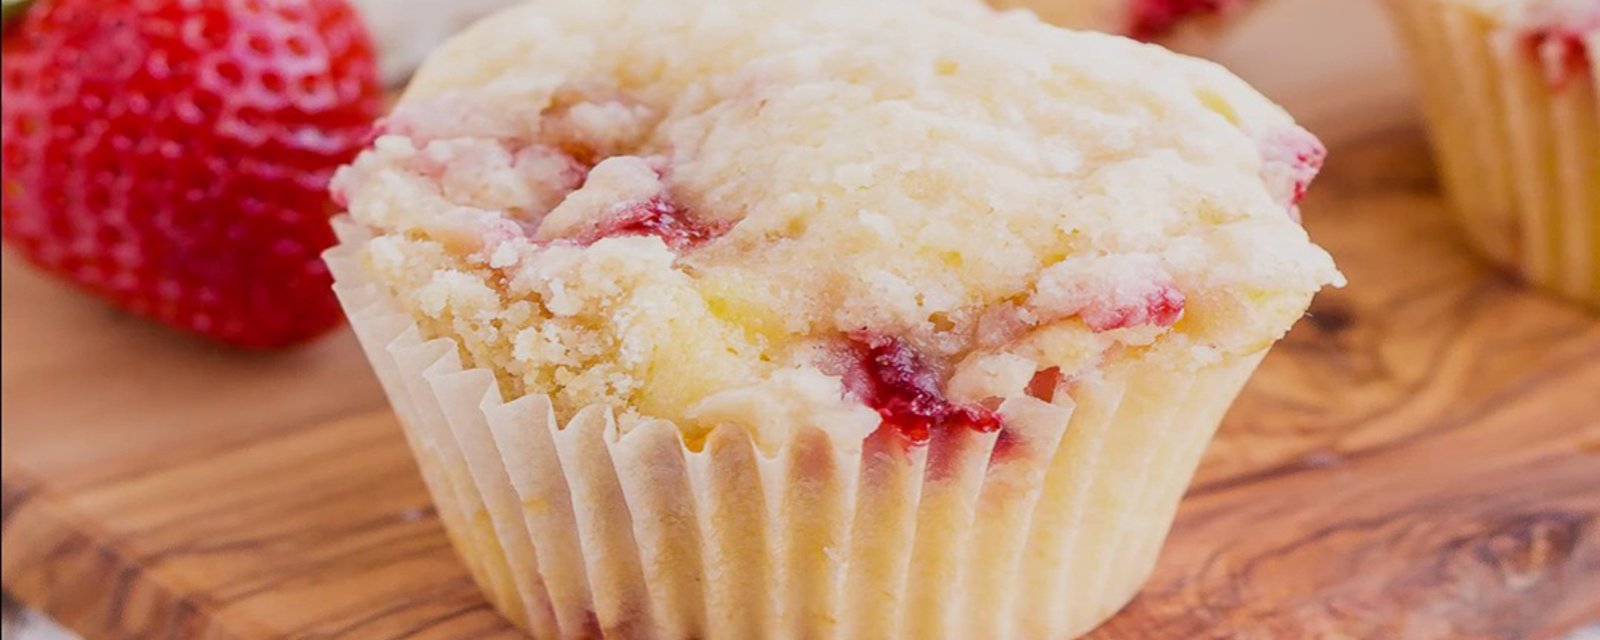 Le secret de leurs si BONS goûts....C'est ce CRUMBLE que l'on ajoute sur ces jolis muffins aux fraises et au babeurre!